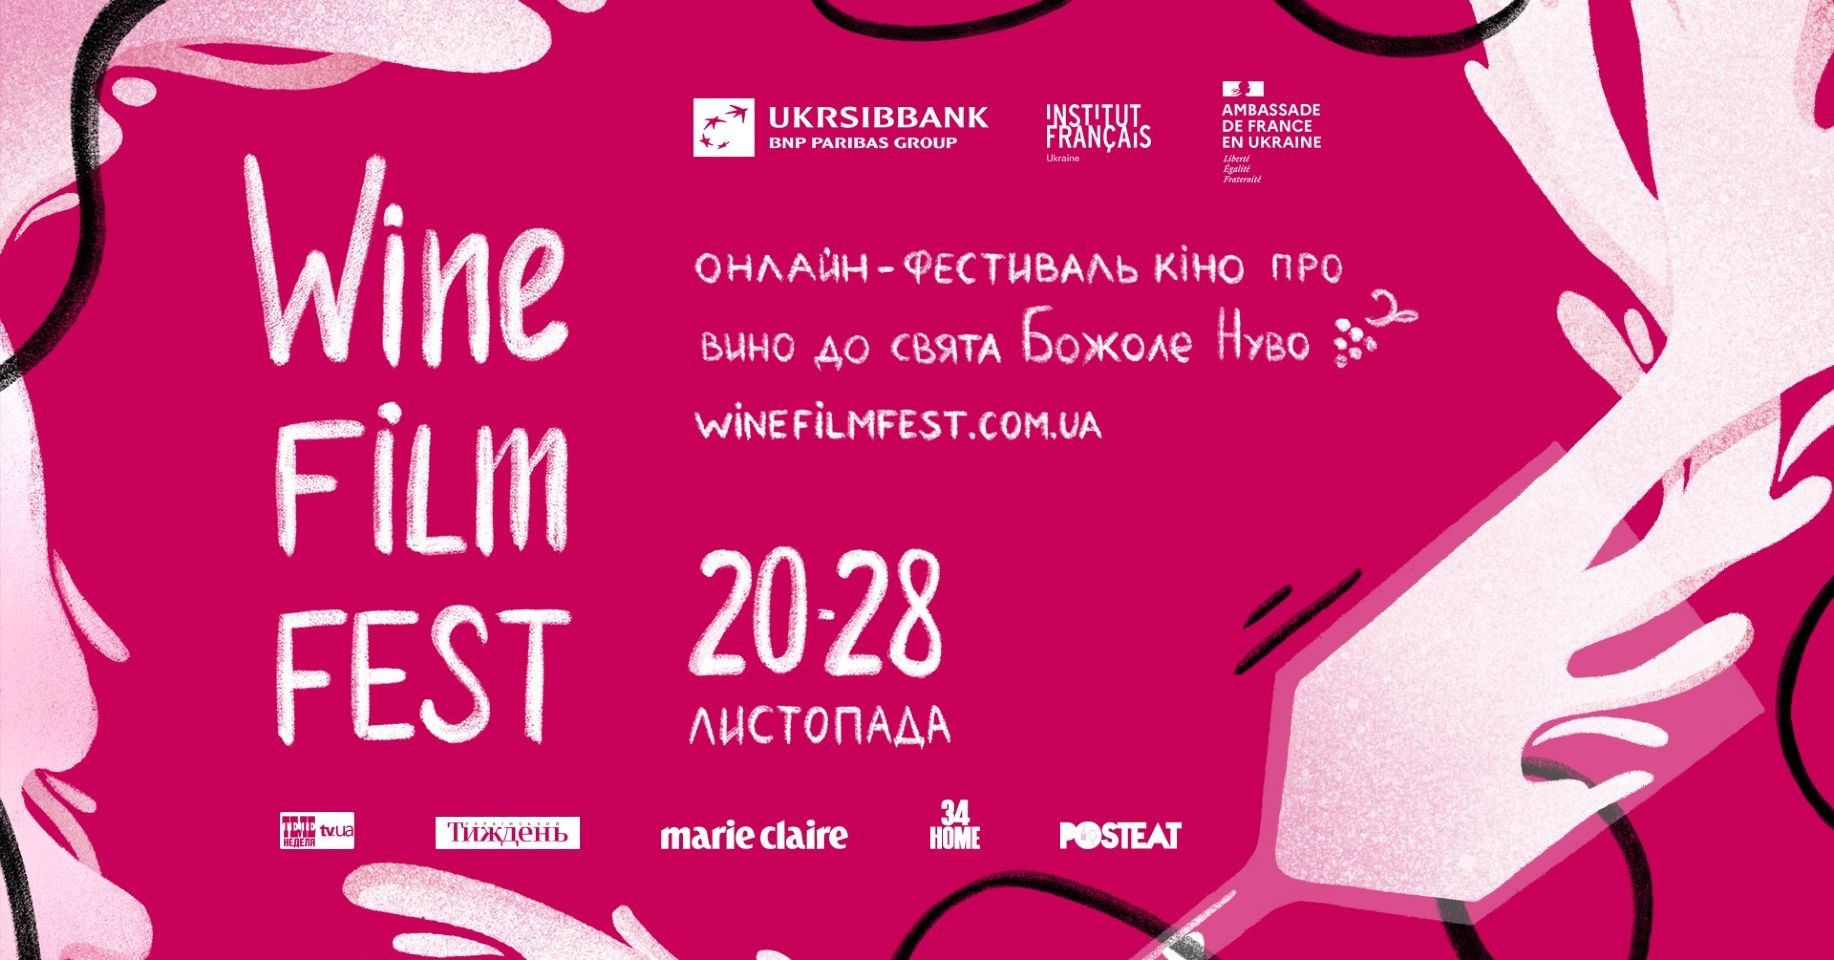 V Ukraine S 20 Po 28 Nojabrja Prohodit Francuzskij Onlajn Kinofestival Wine Film Fest 198c59f